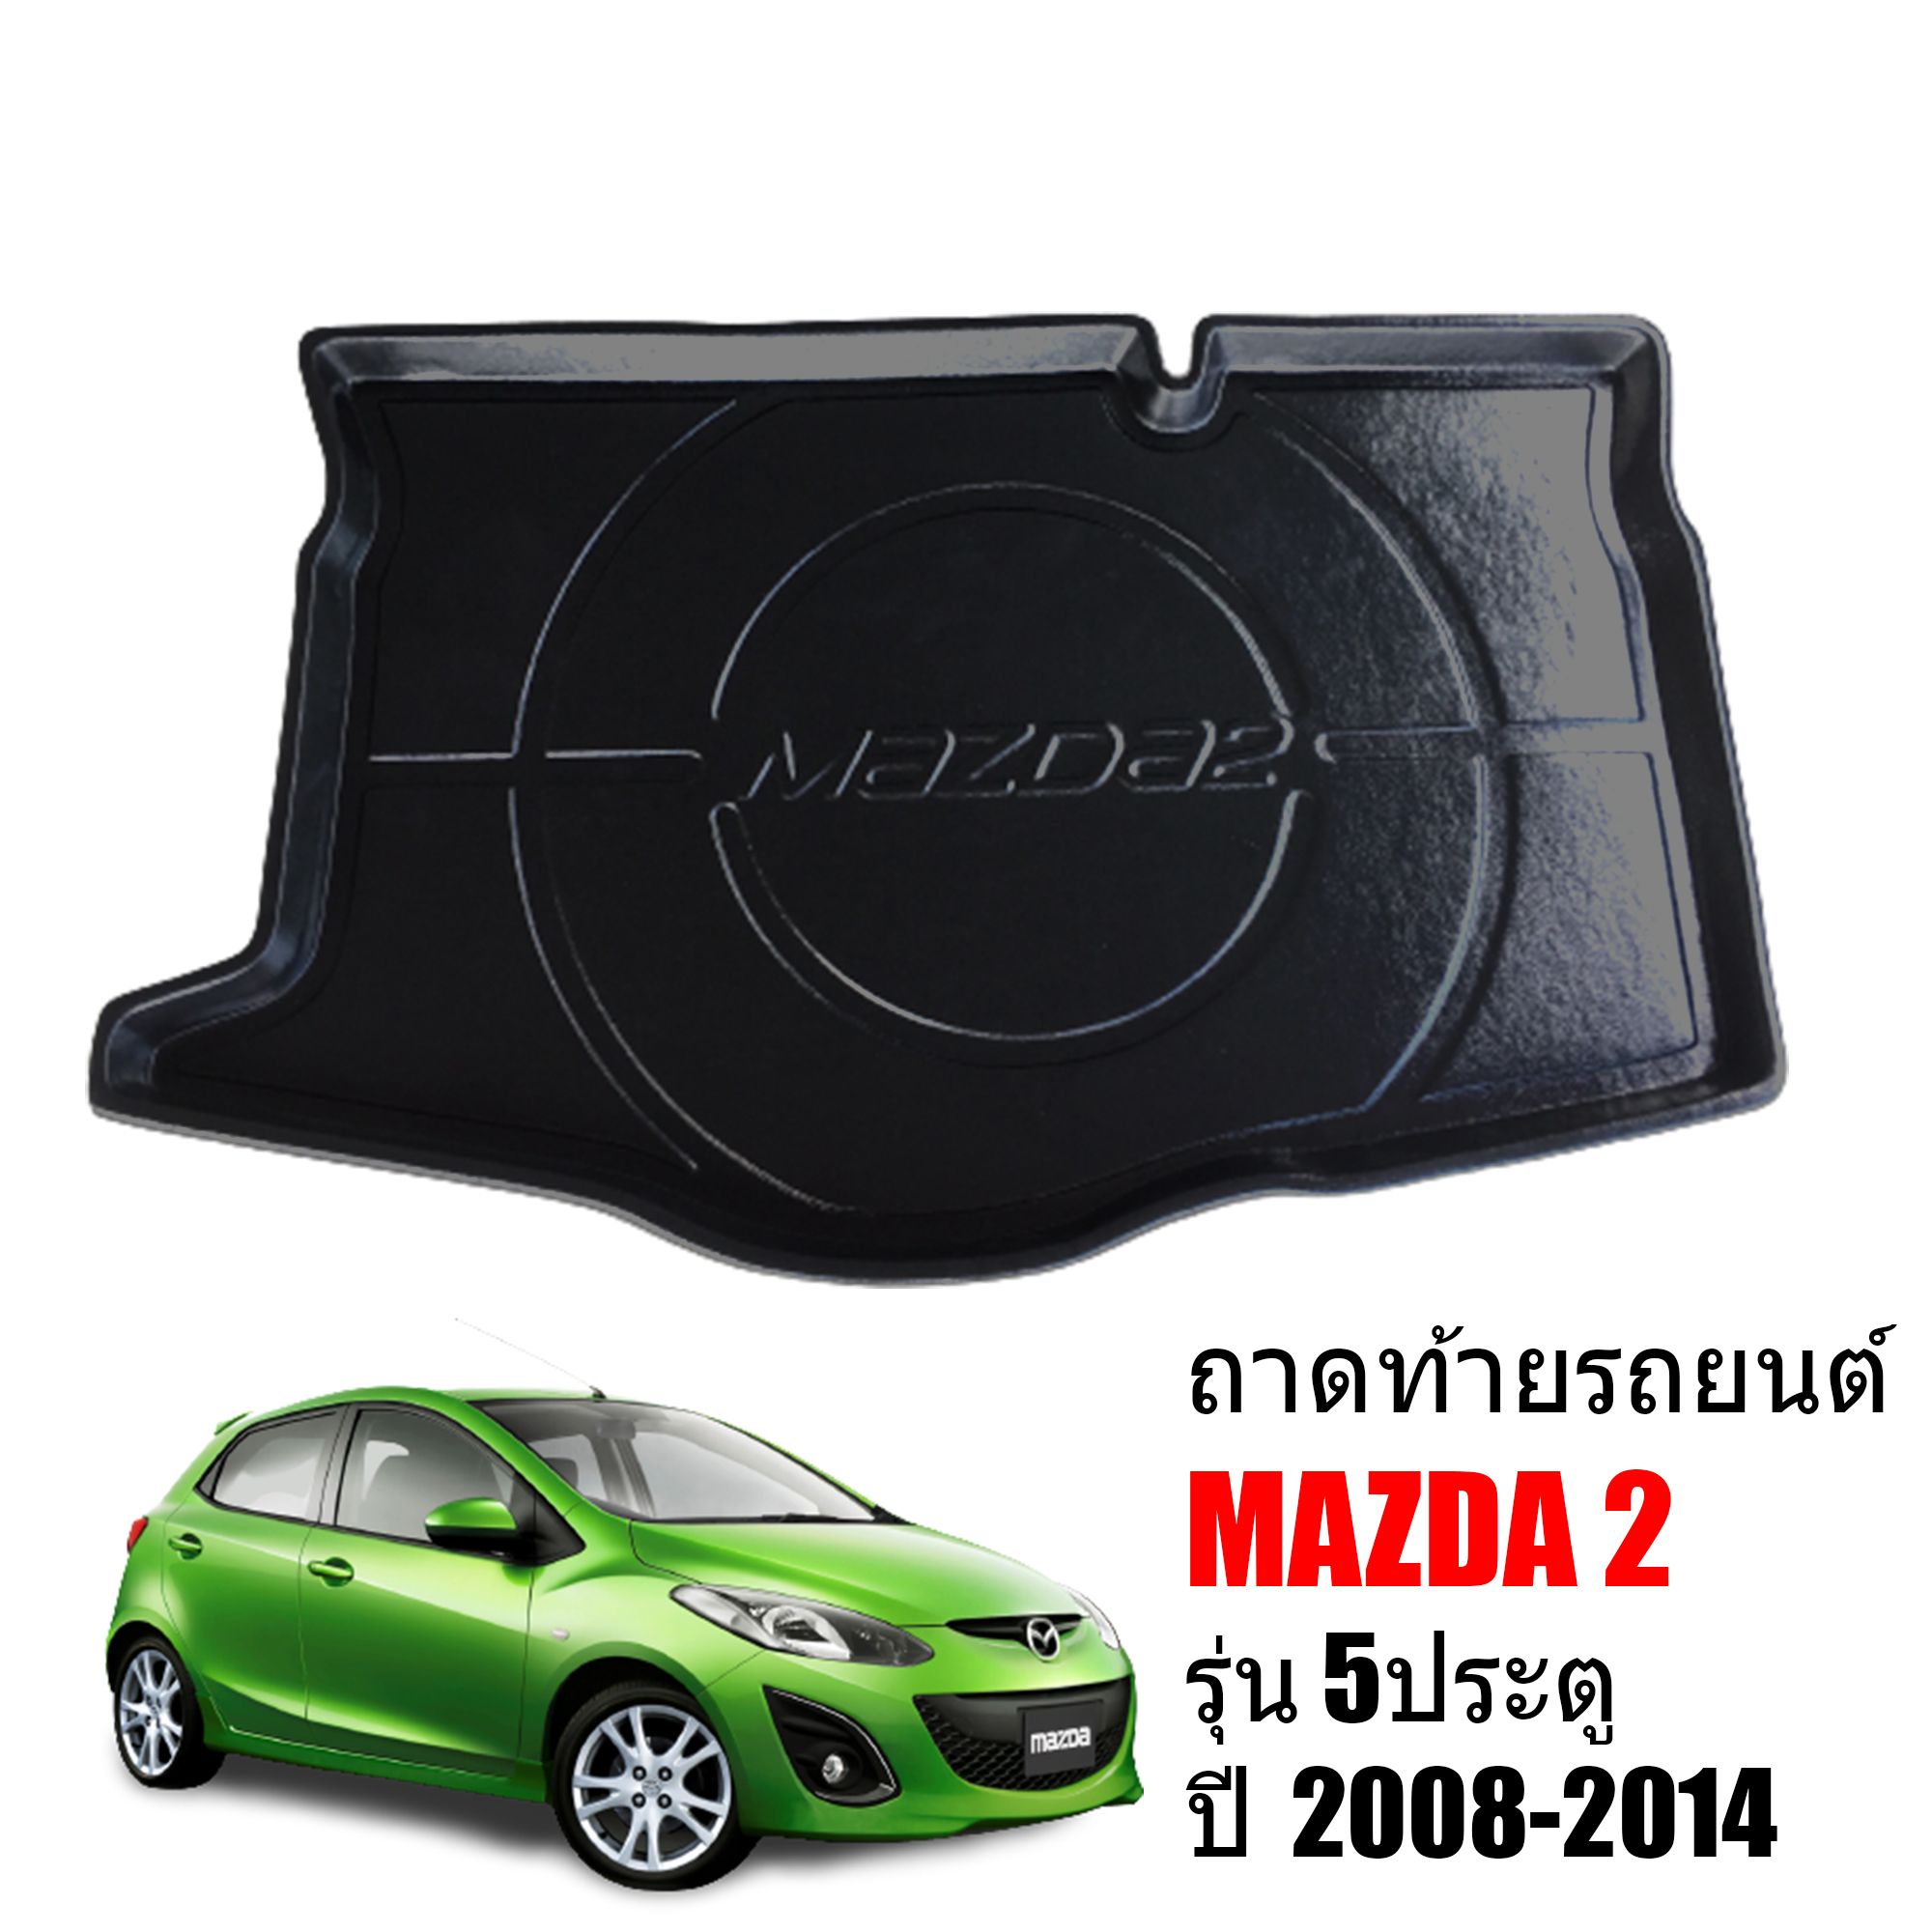 ถาดท้ายรถยนต์ MAZDA 2 (5 ประตู) ปี 2009-2014 (ก่อนโฉมปัจจุบัน) (แถมผ้า) ถาดท้ายรถ ถาดสัมภาระท้ายรถ ถาดรองท้ายรถ ถาดปูท้ายรถ ถาดวางสัมภาระท้ายรถ